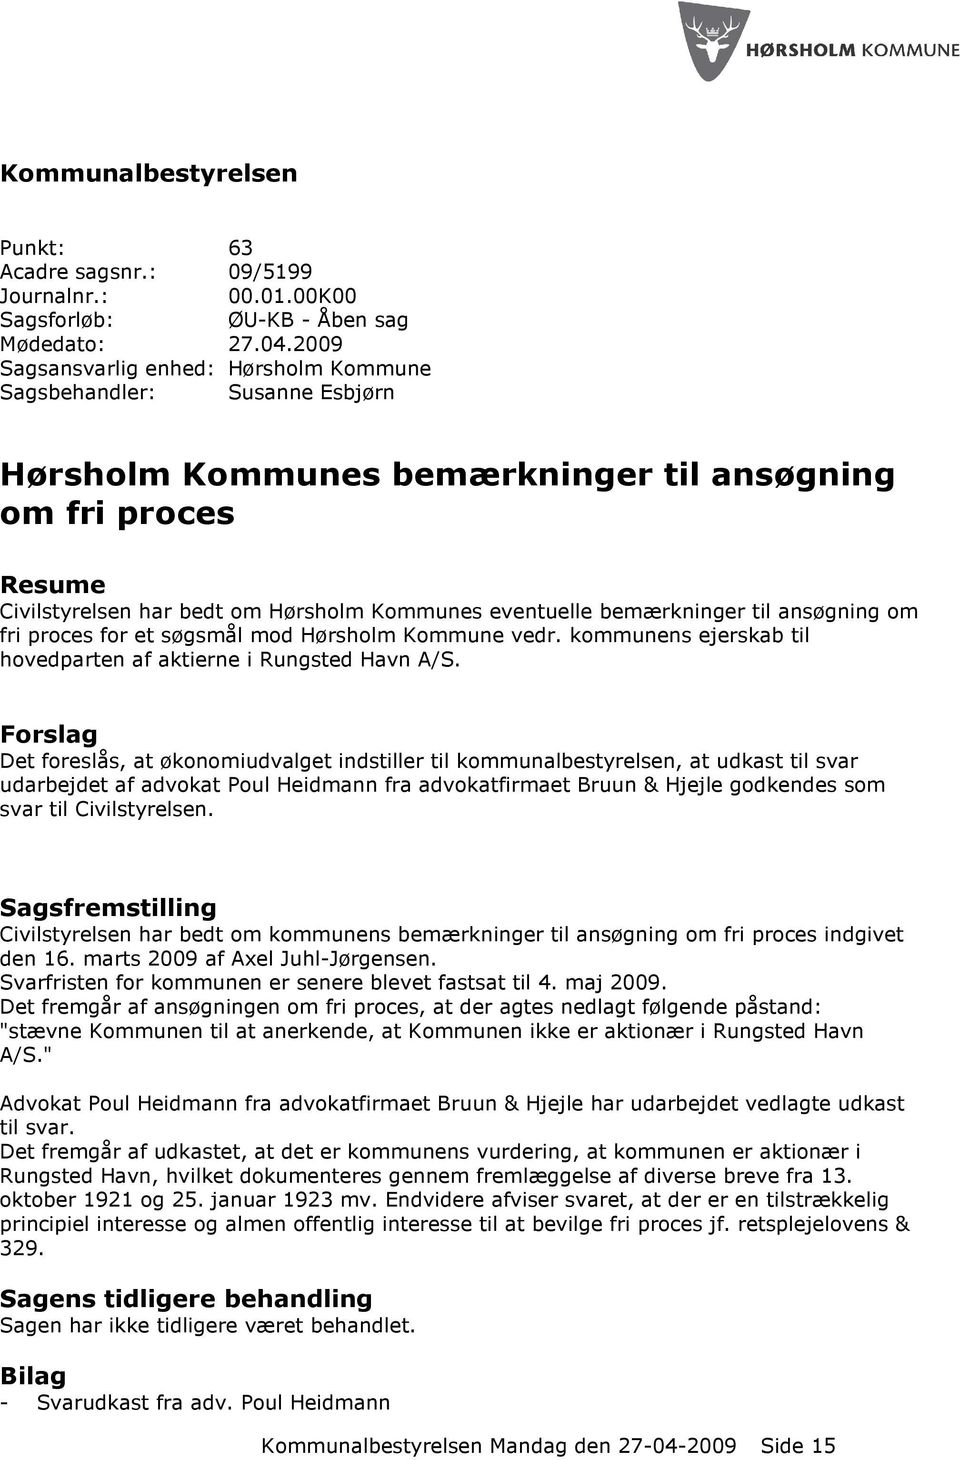 bemærkninger til ansøgning om fri proces for et søgsmål mod Hørsholm Kommune vedr. kommunens ejerskab til hovedparten af aktierne i Rungsted Havn A/S.